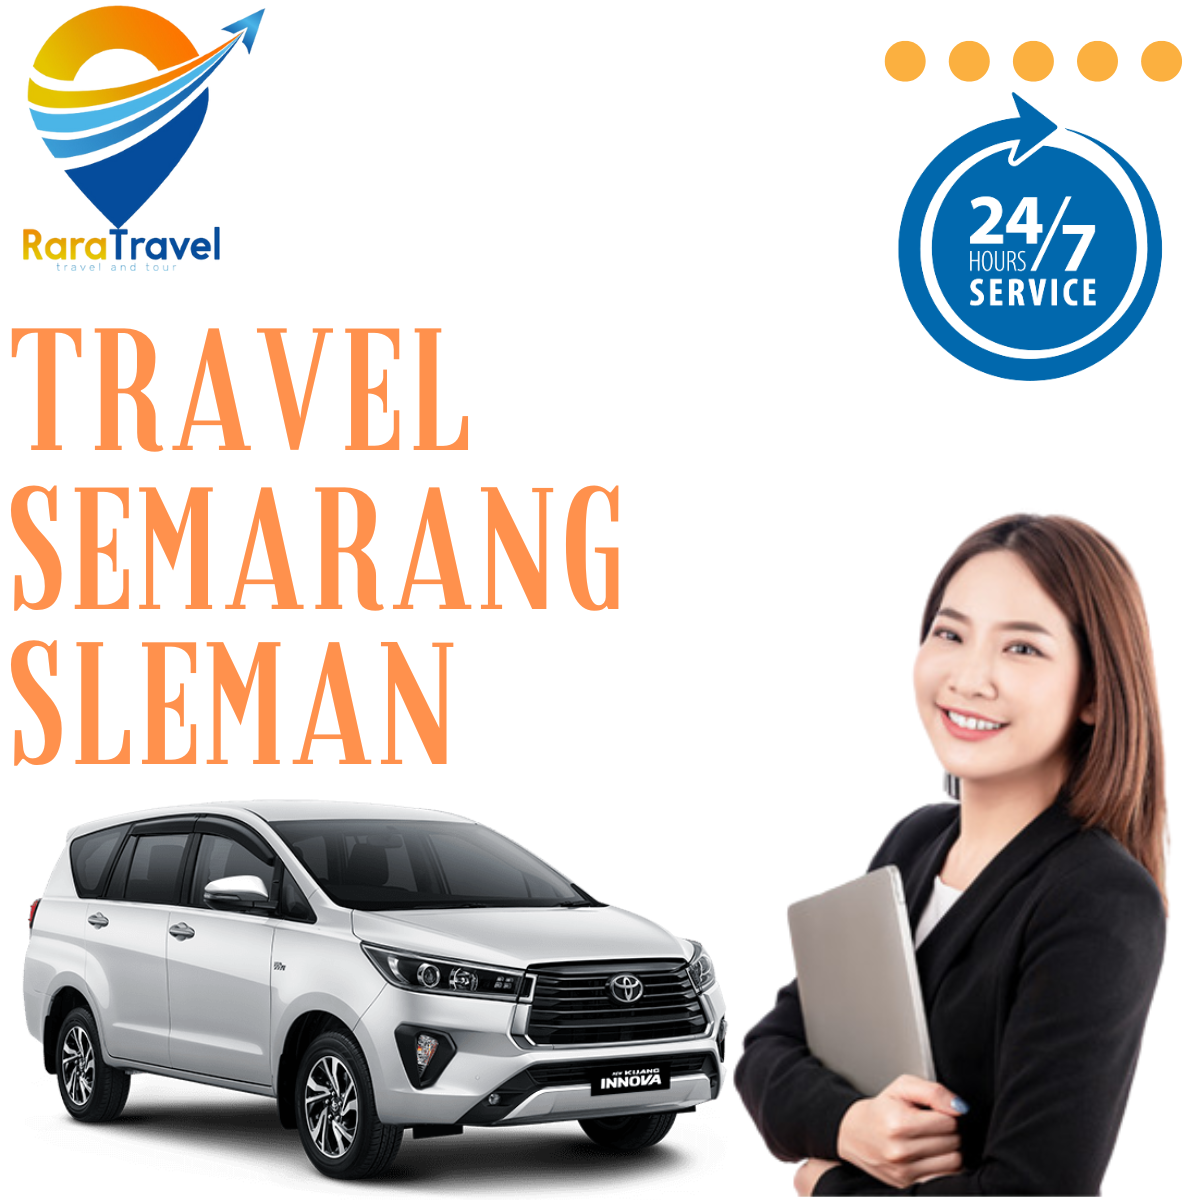 Travel Semarang Sleman PP Murah Hiace - RARATRAVEL.ID